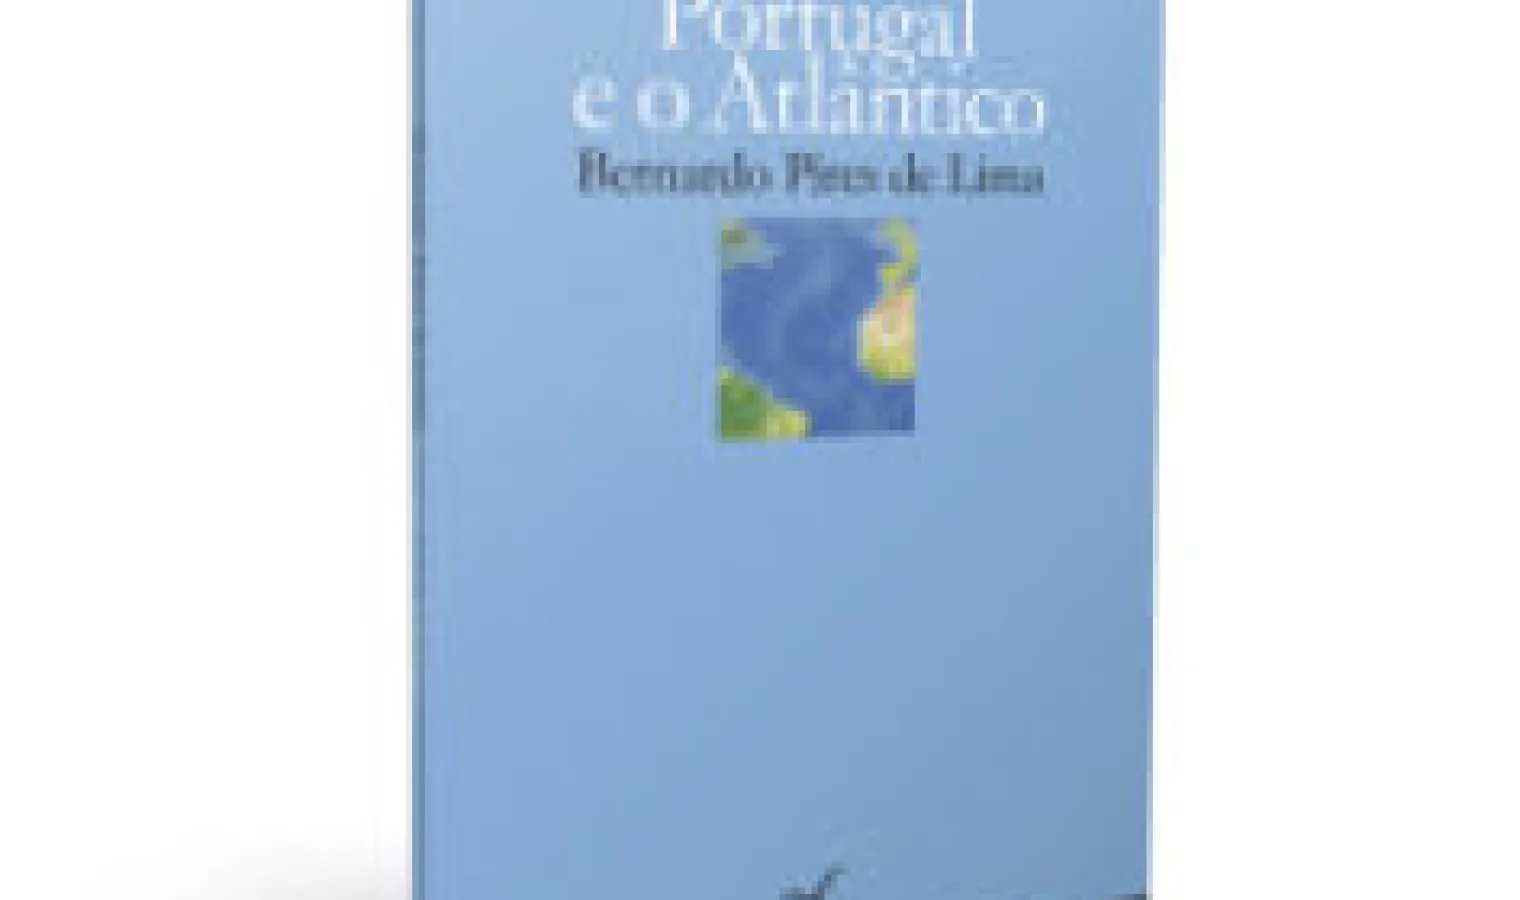 Portugal e o Atlântico